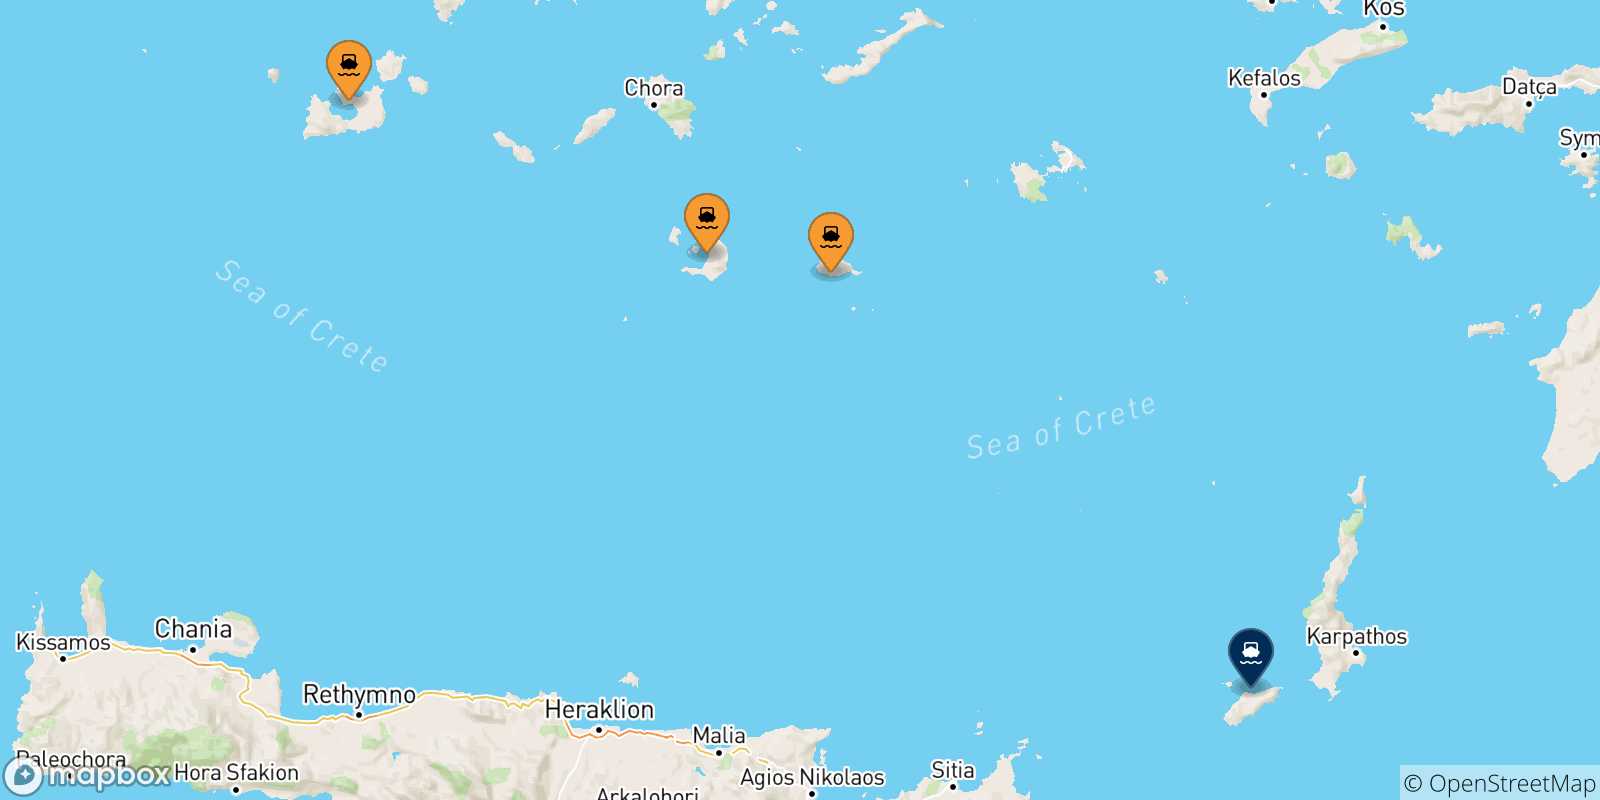 Mappa delle possibili rotte tra le Isole Cicladi e Kasos